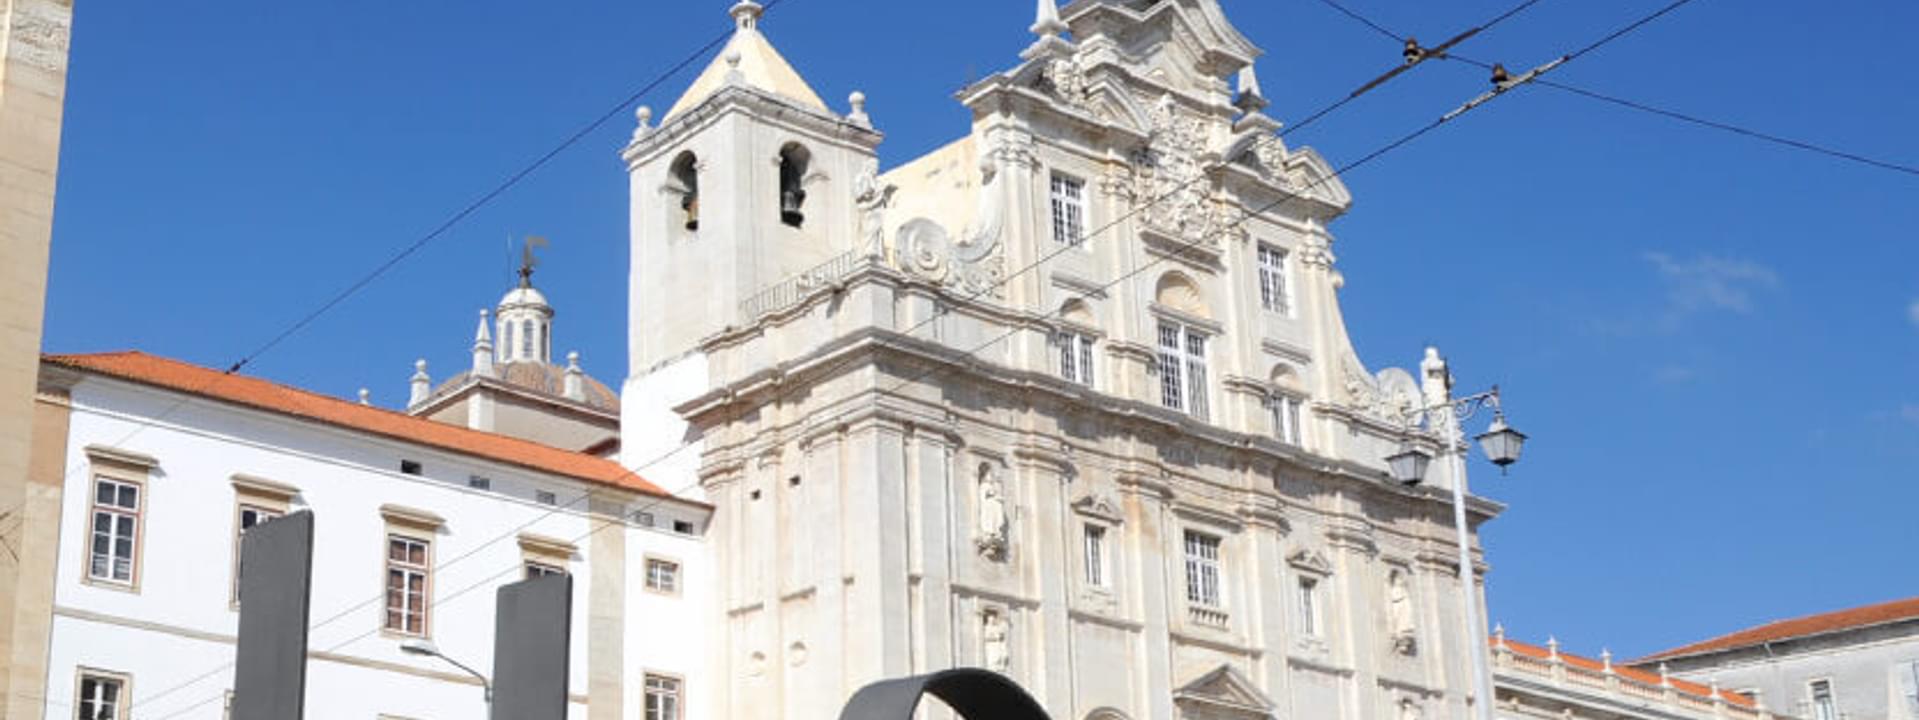 New Cathedral  - Sé Nova